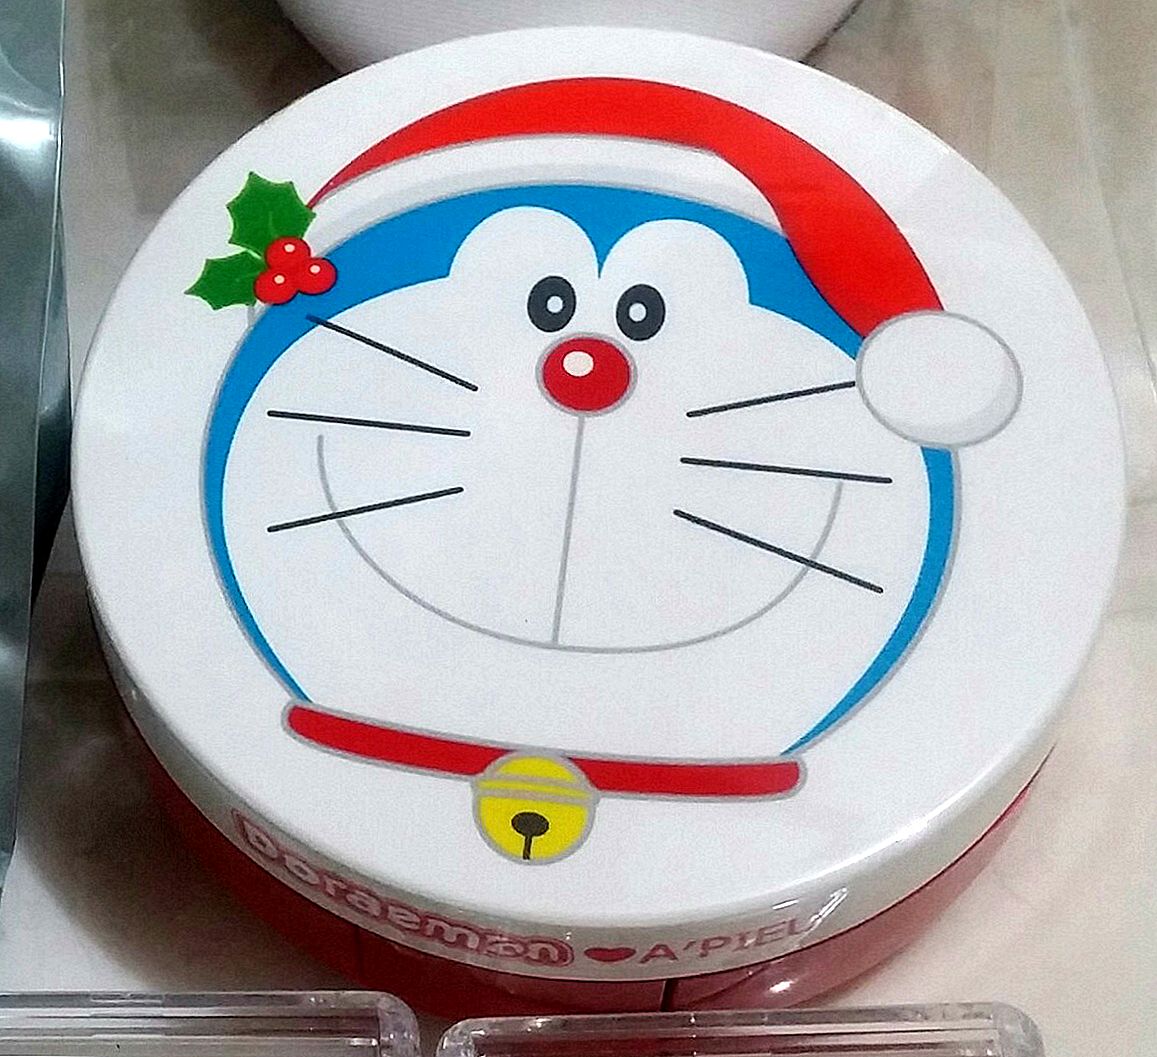 Skal Doraemon ende i bind 6?